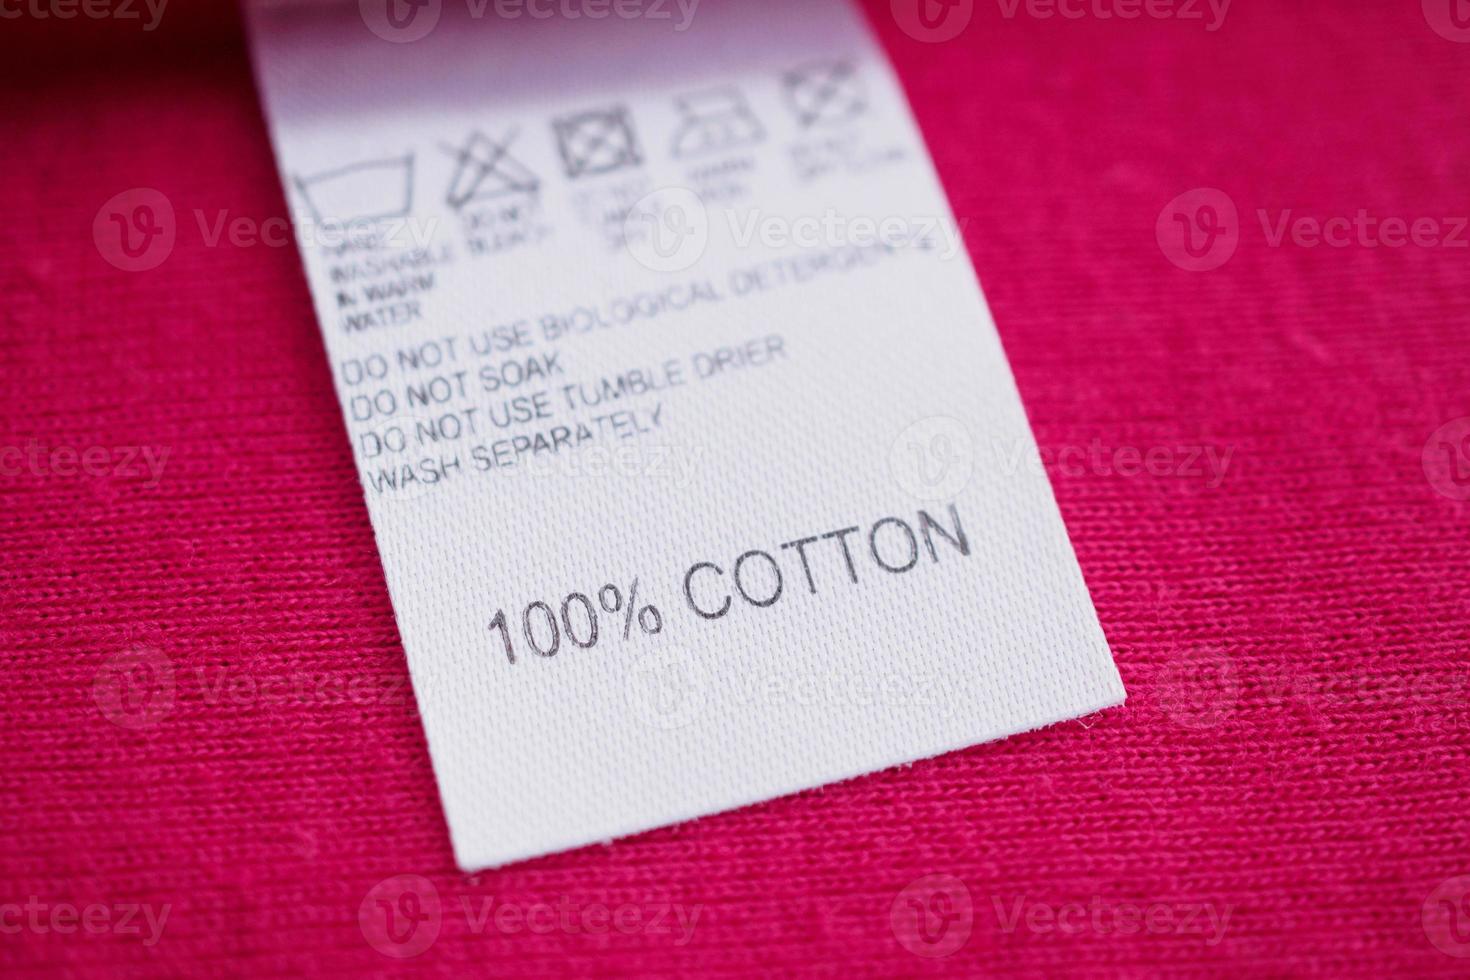 instruções de lavagem de roupas brancas etiqueta de roupas na camisa de algodão vermelha foto